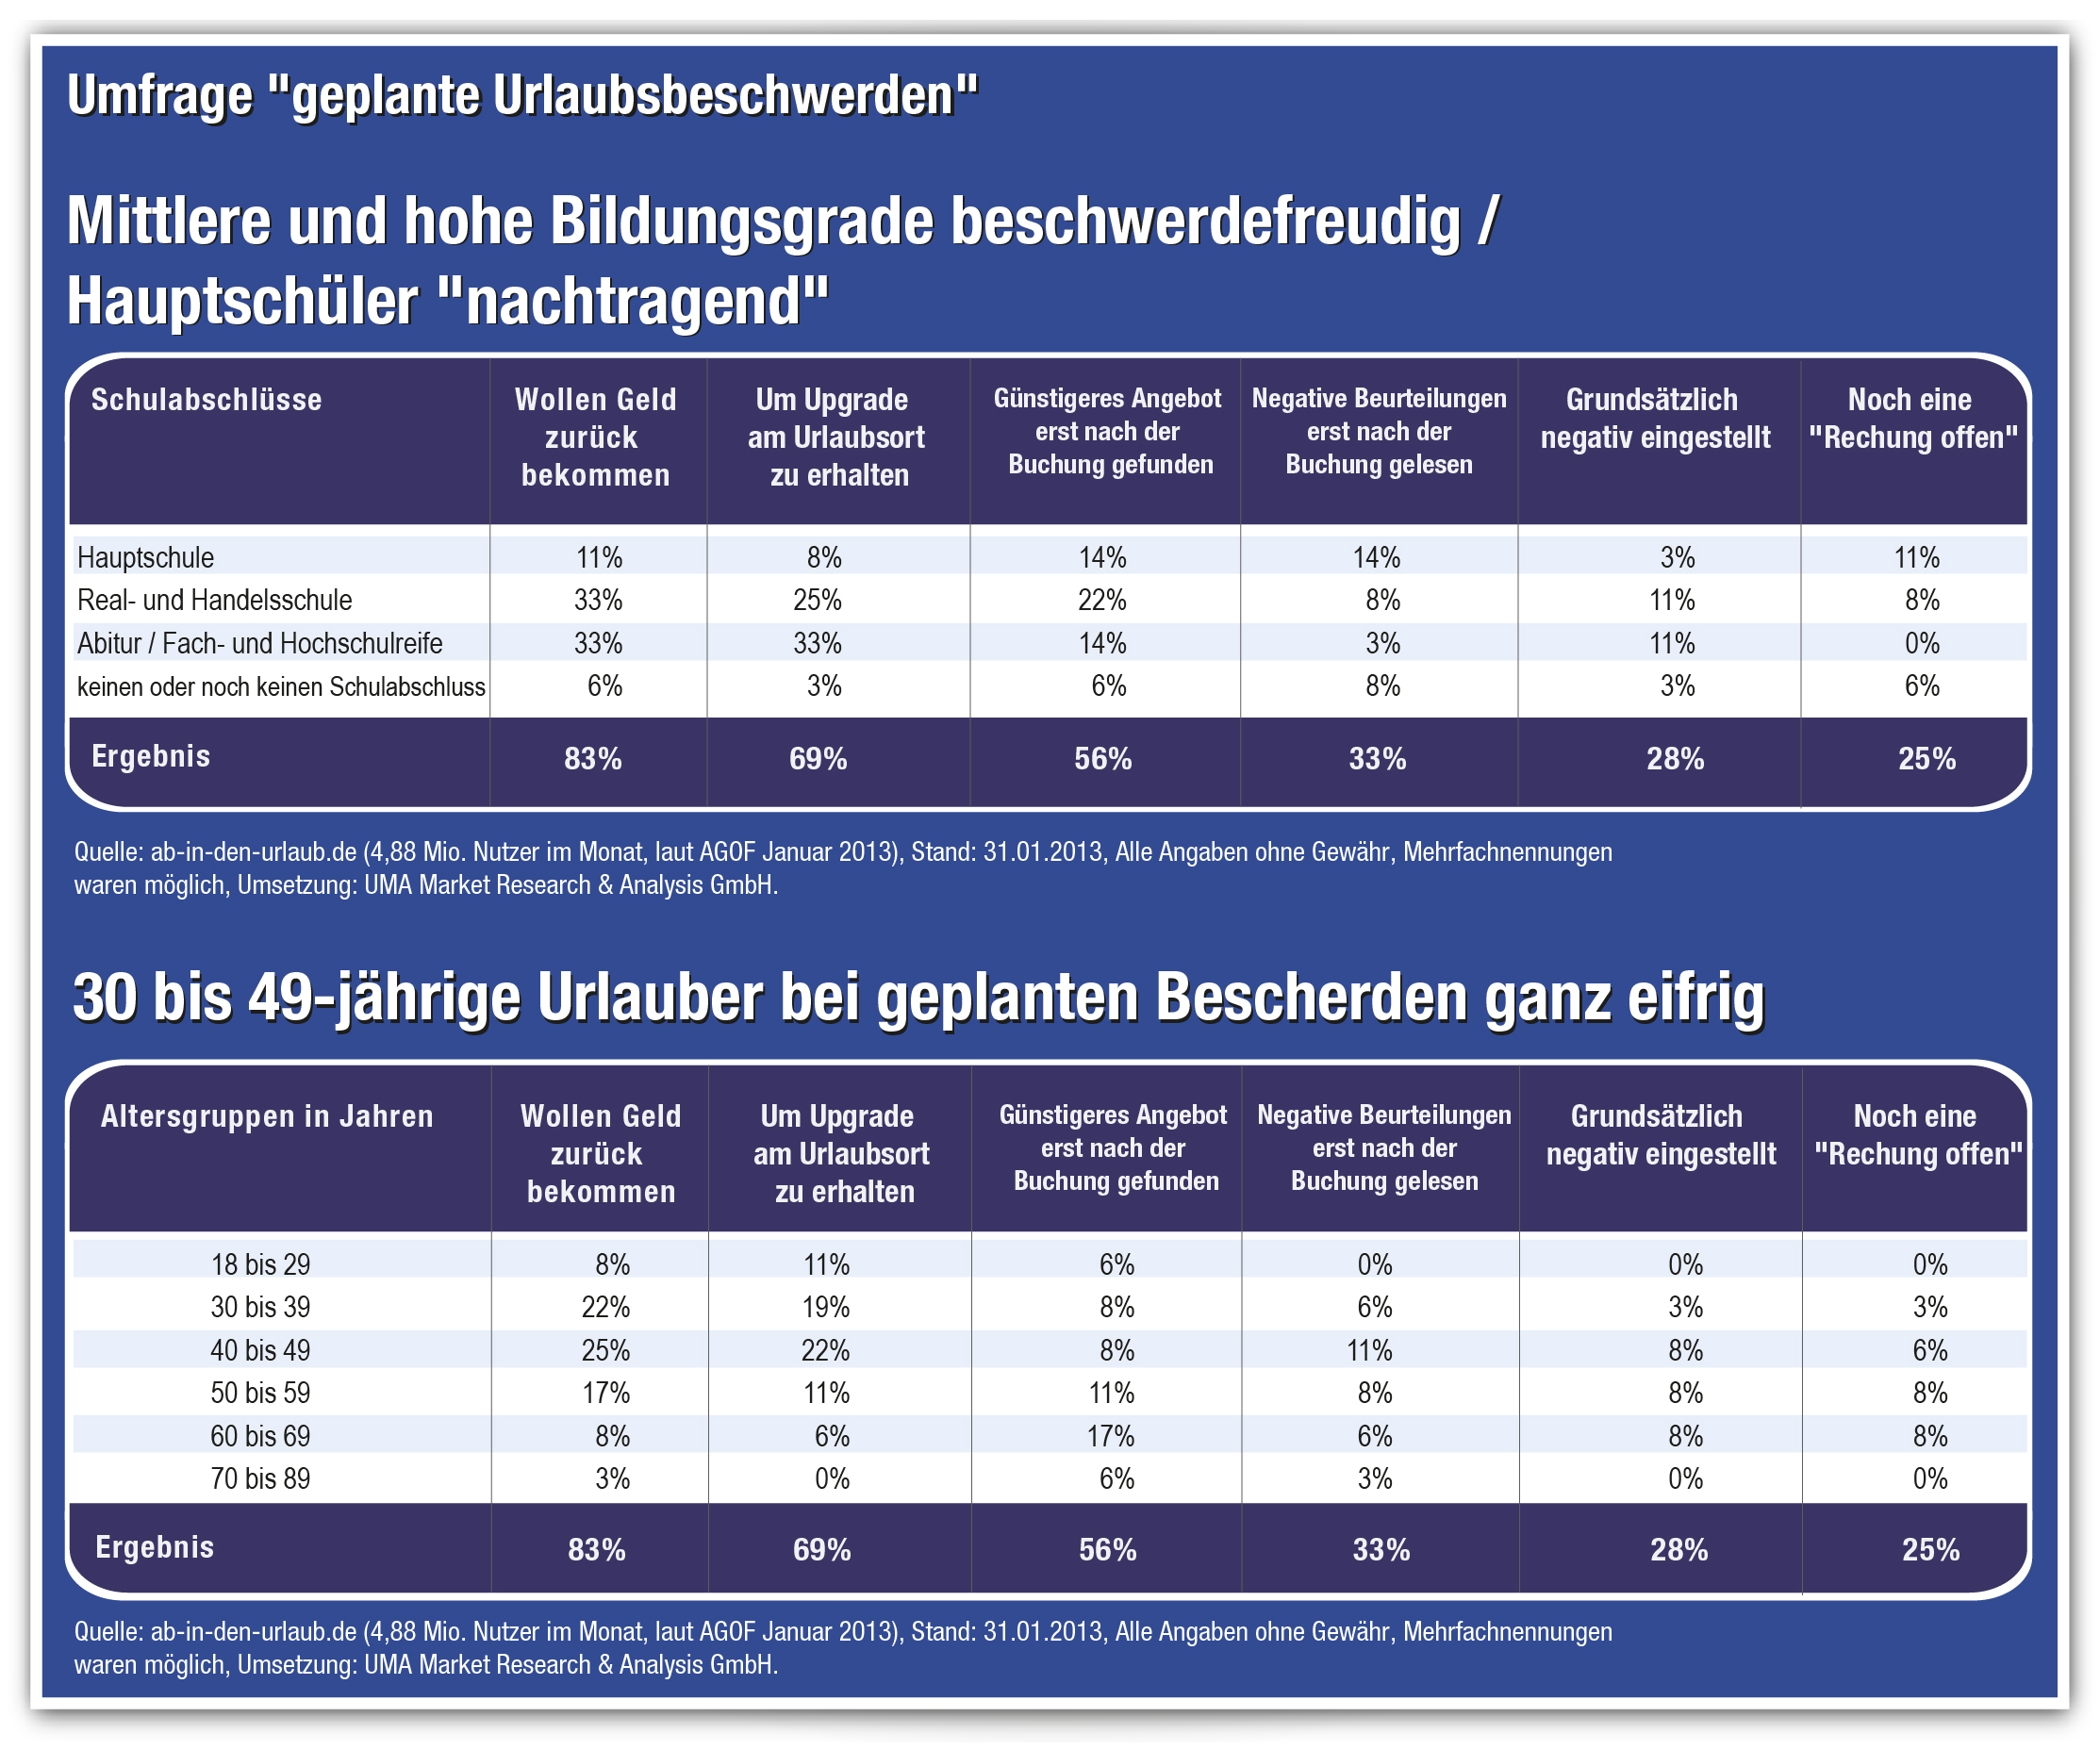 Deutsche planen Reklamationen vor dem Urlaubsbeginn? - Umfrage von www.ab-in-den-urlaub.de